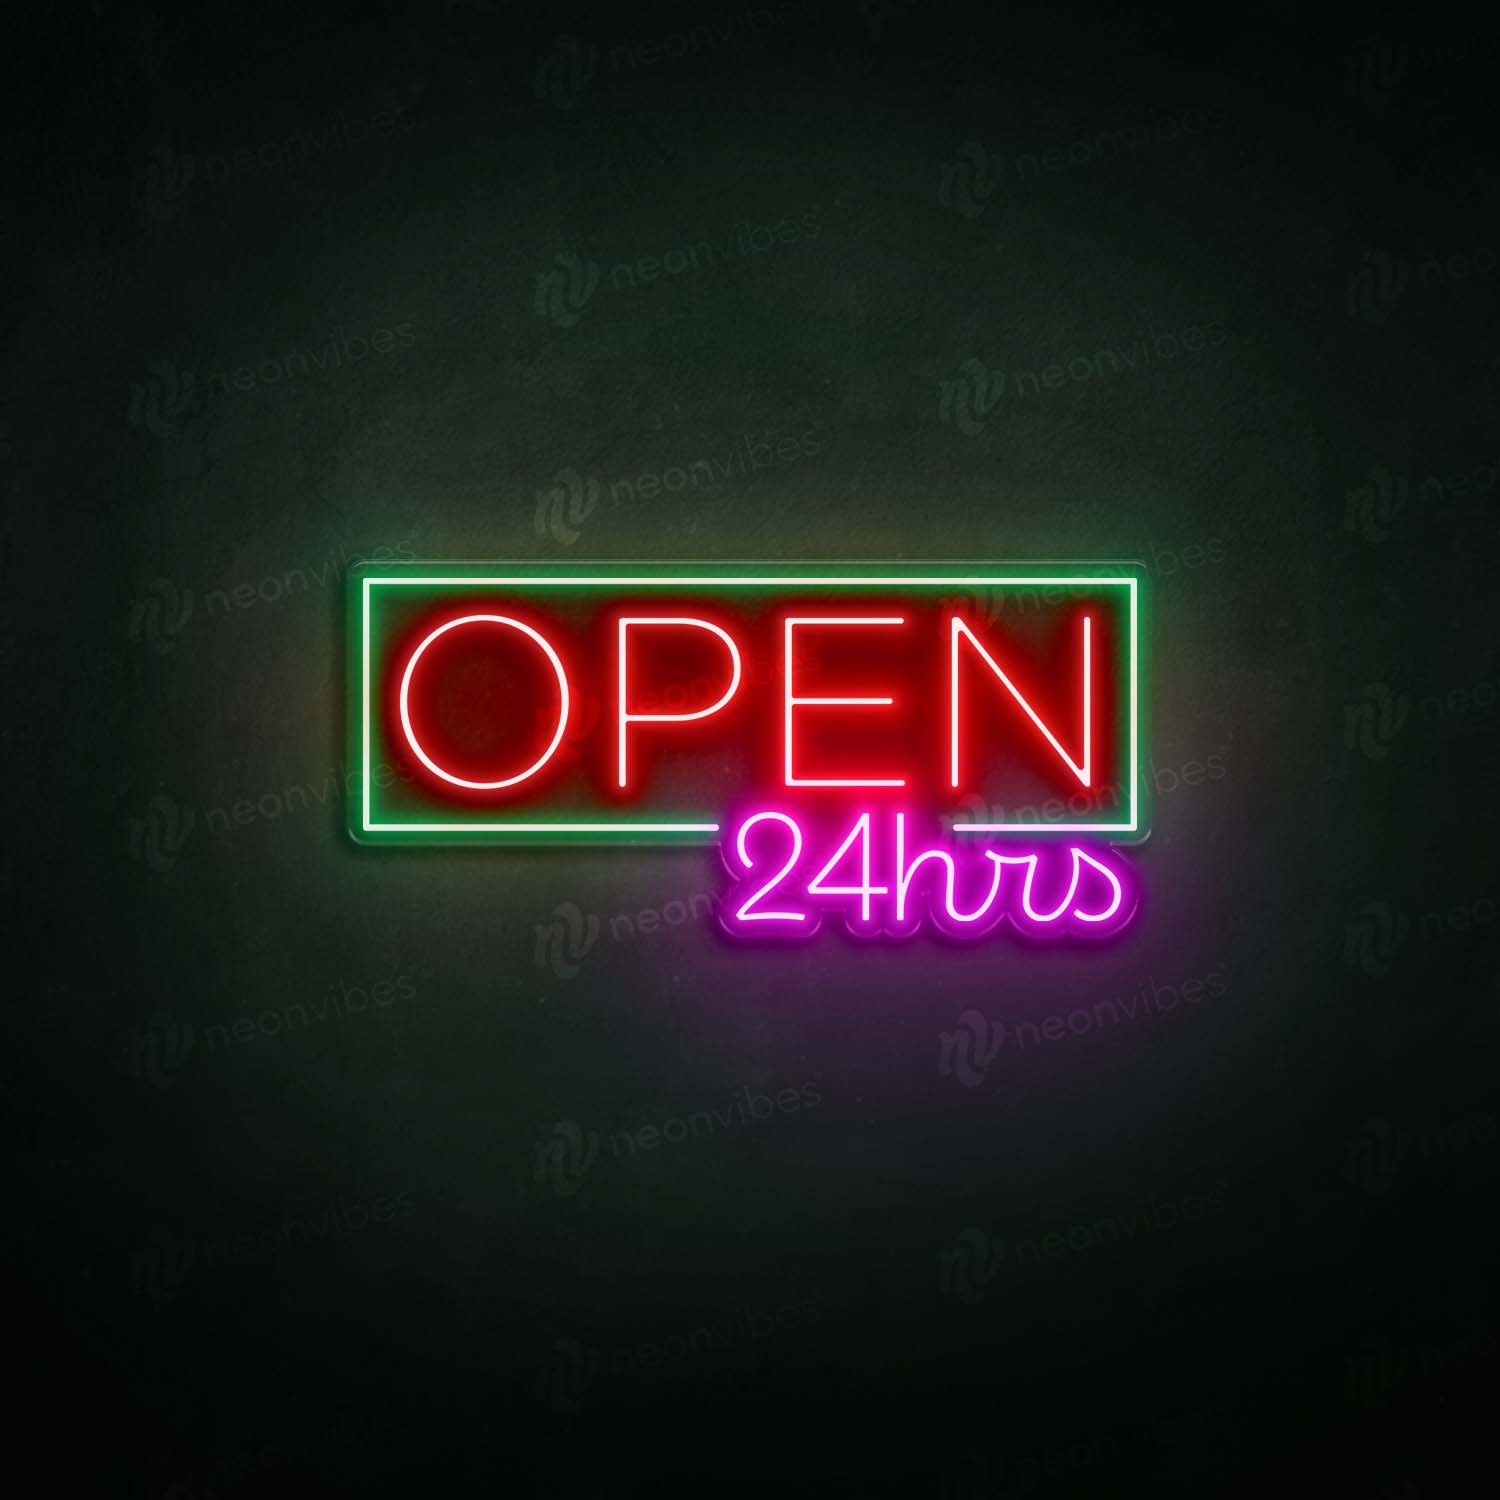 Open 24hr neon sign